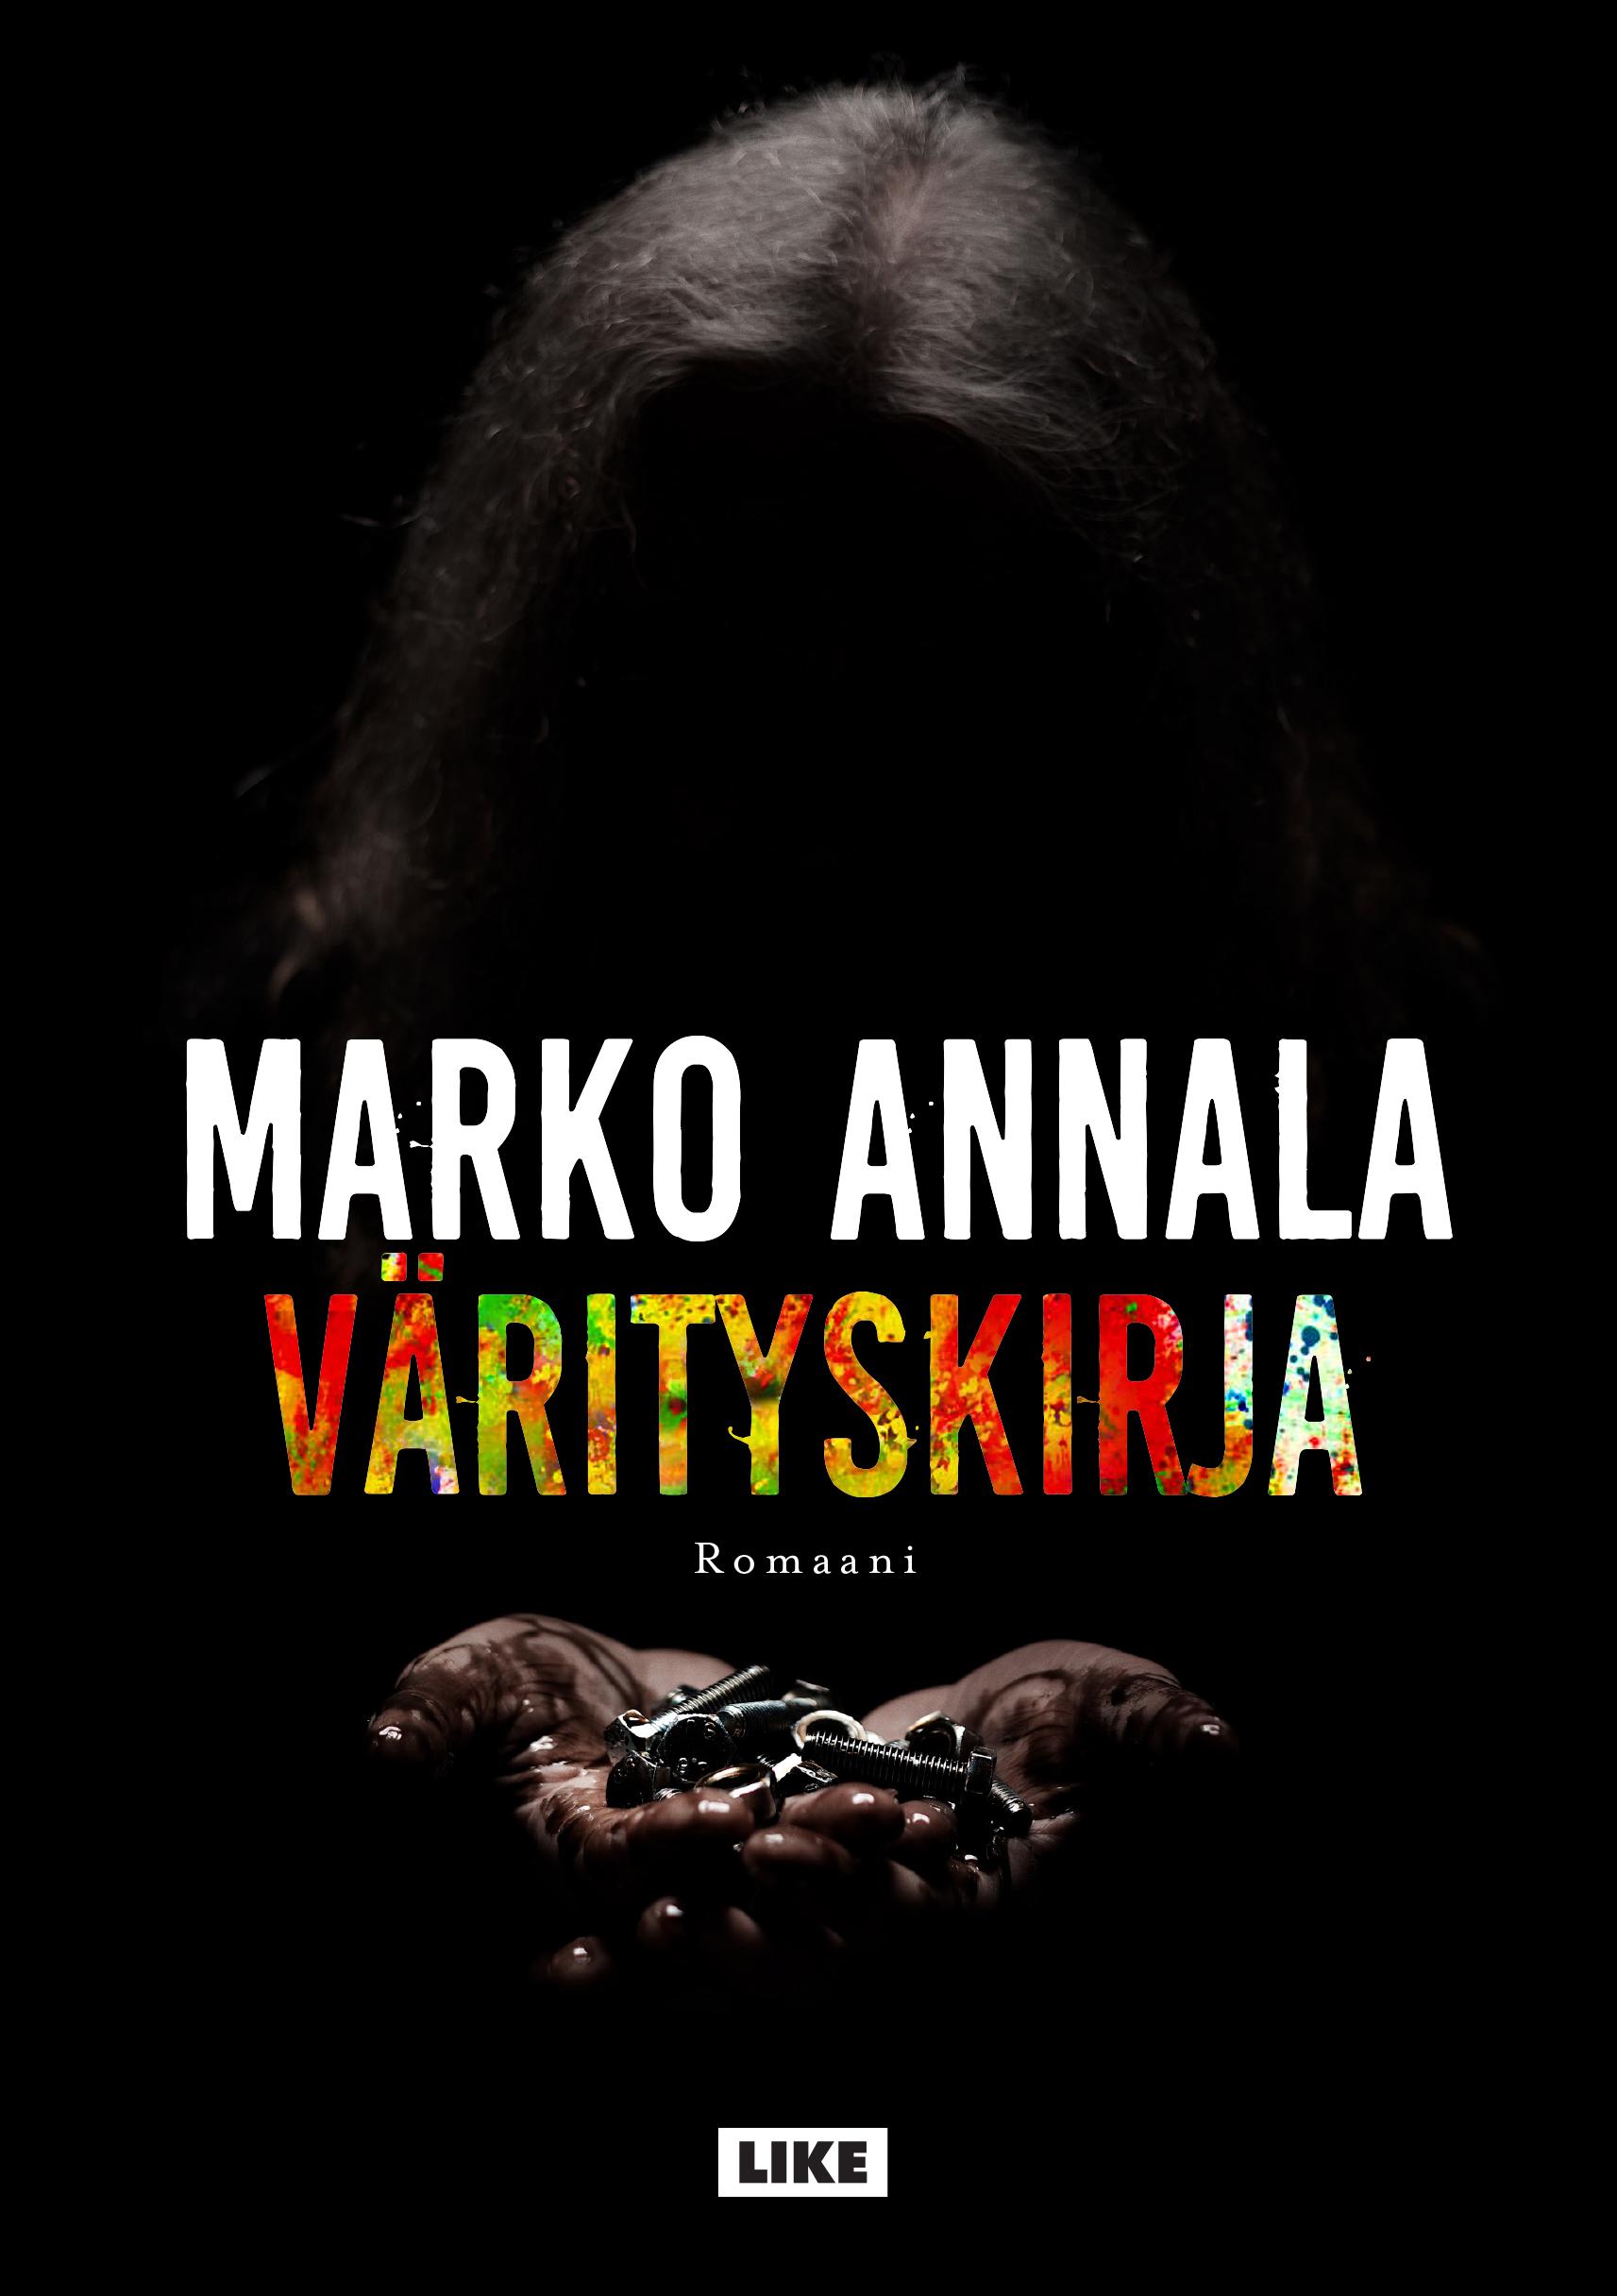 Marko Annala